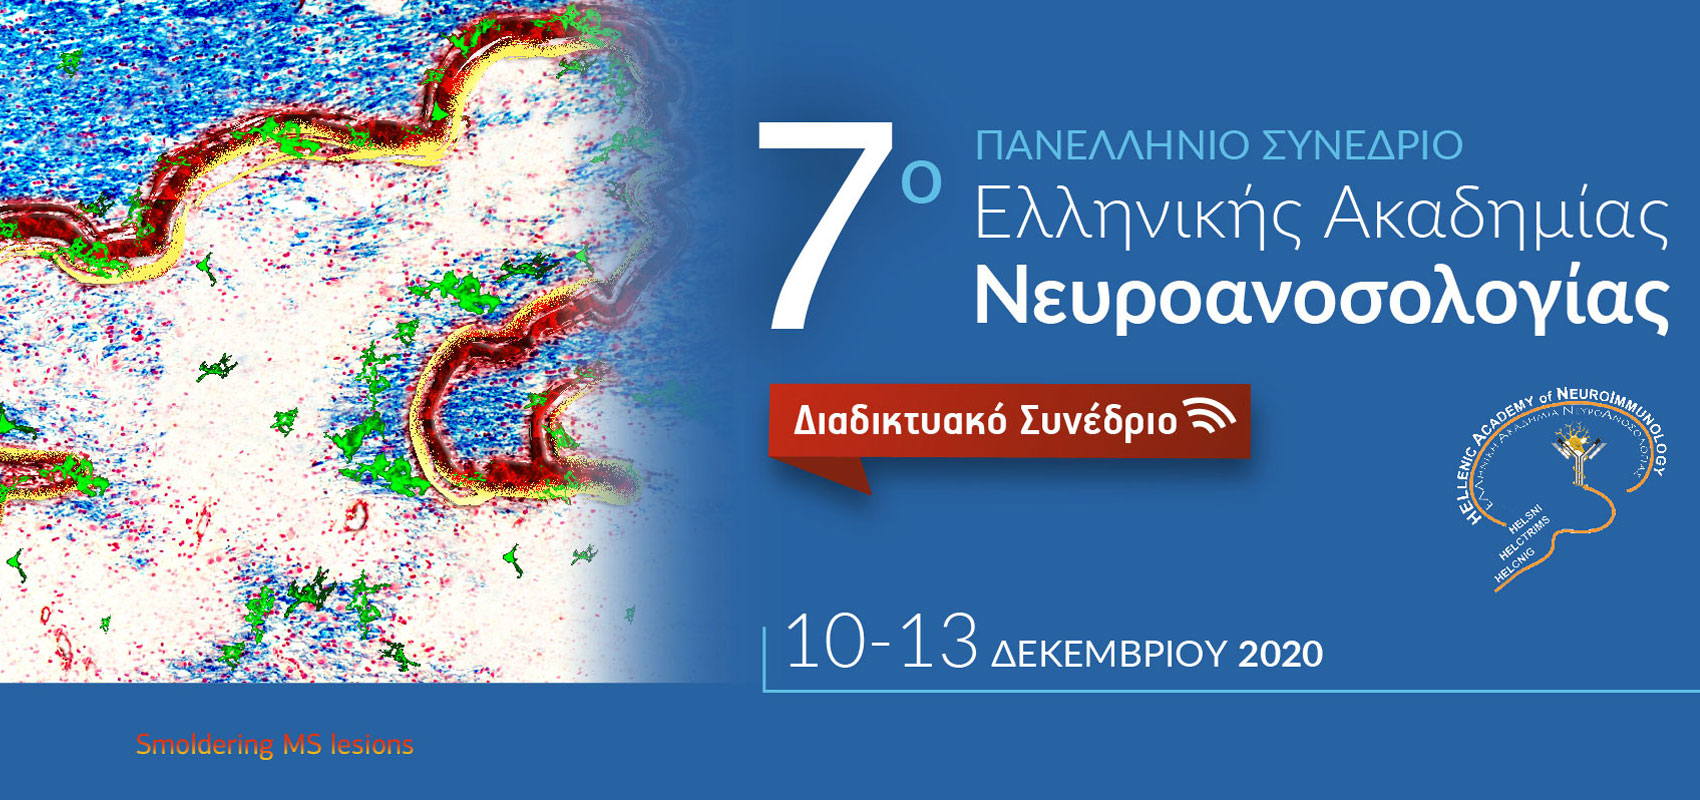 7ο Πανελλήνιο Συνέδριο της Ελληνικής Ακαδημίας Νευροανοσολογίας